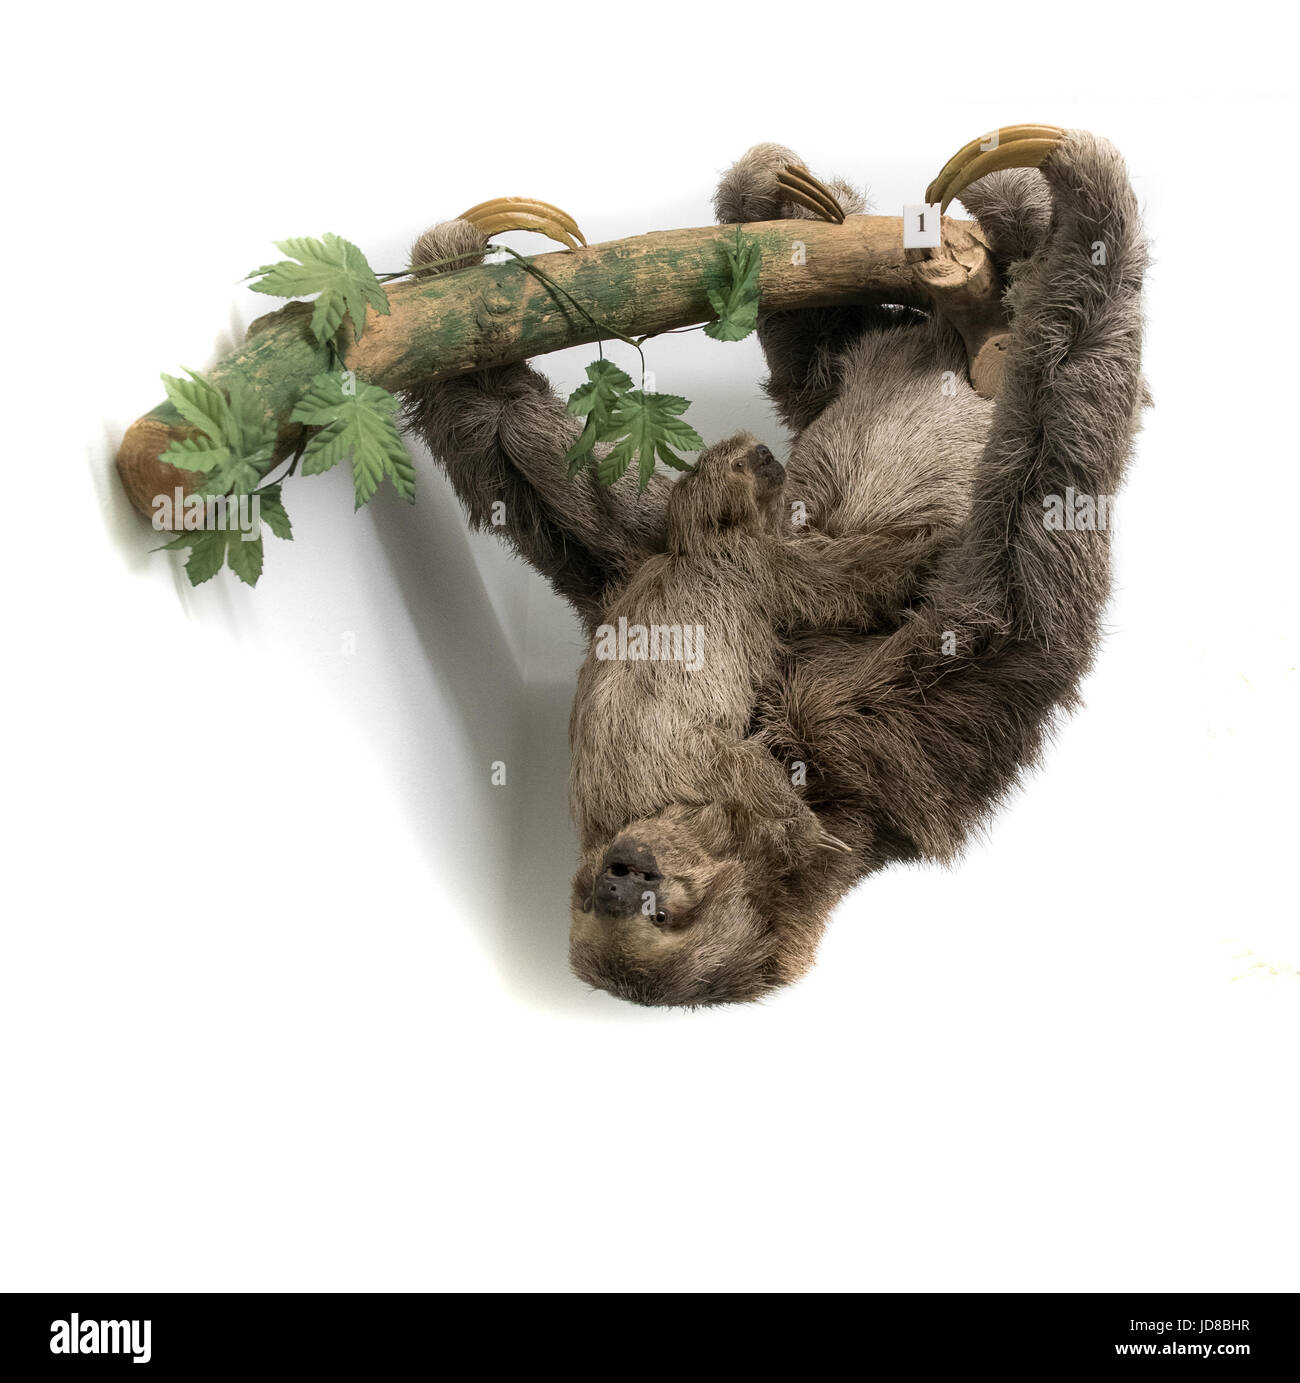 Sloth tête en bas d'une direction générale contre plain white background, studio shot. animal en peluche couleur isolé photo Banque D'Images